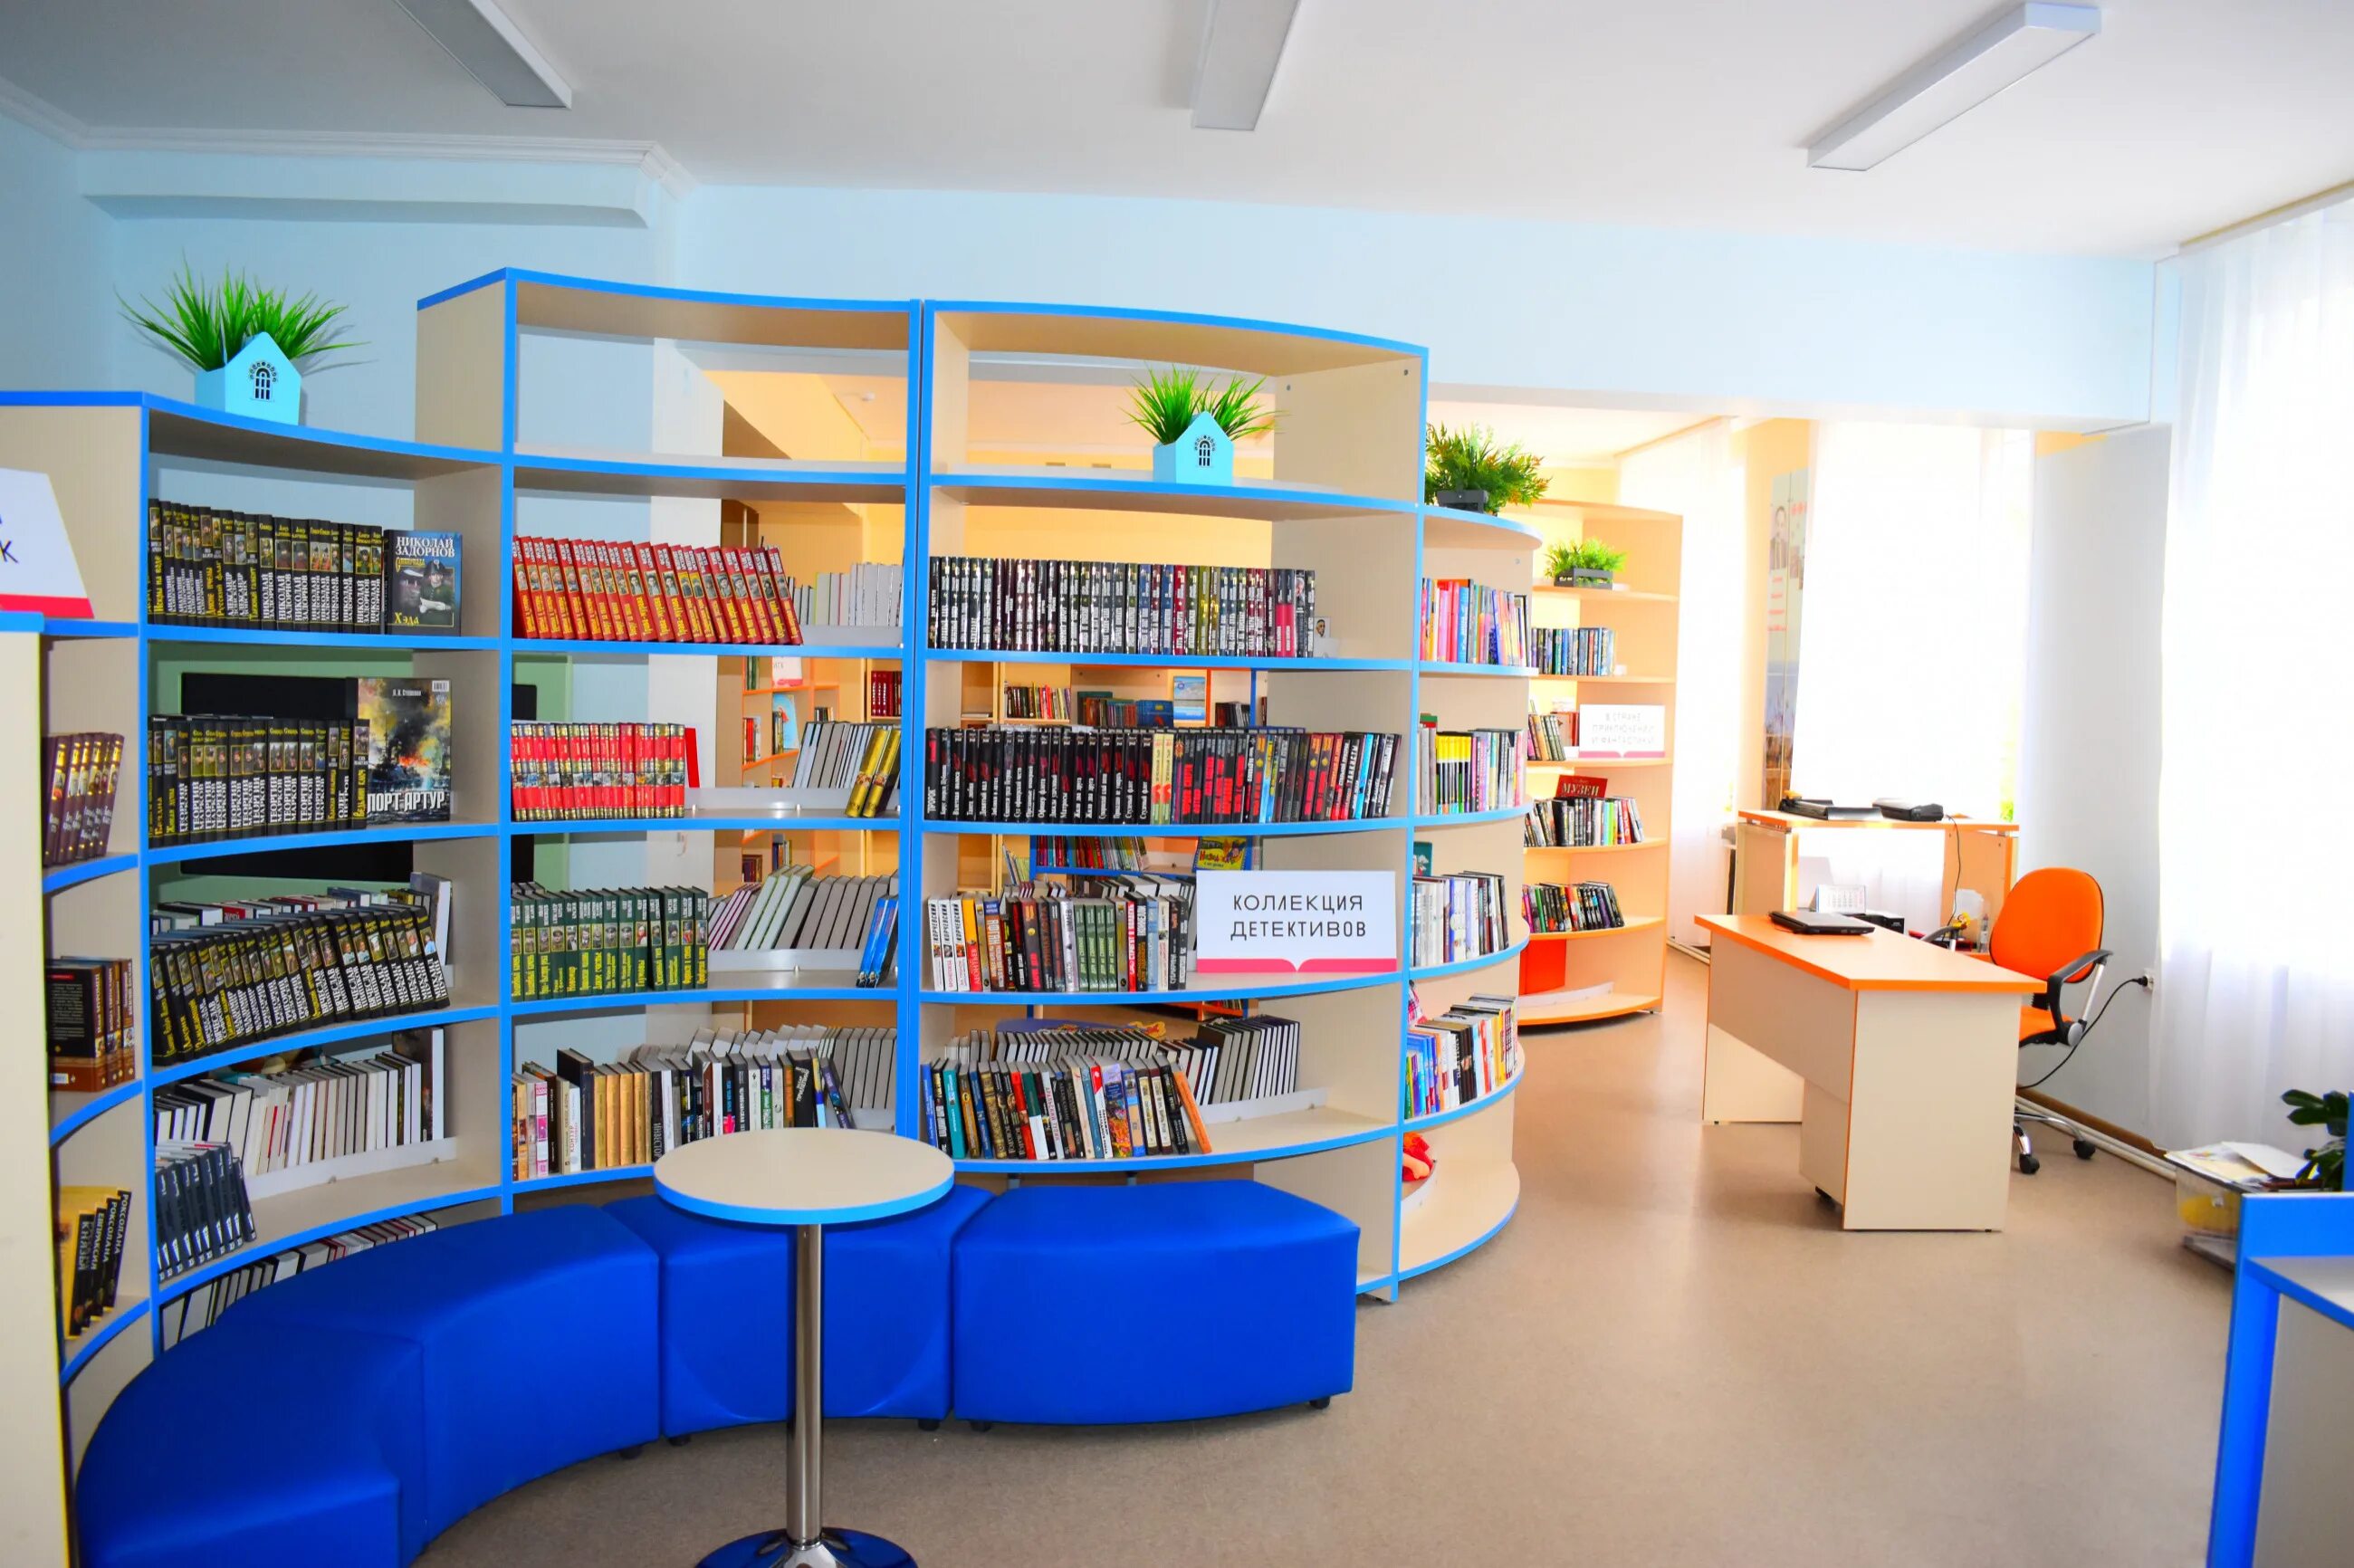 Проект новая библиотека. Модельная библиотека. Новая библиотека. Библиотека нового поколения. Современная модельная библиотека.